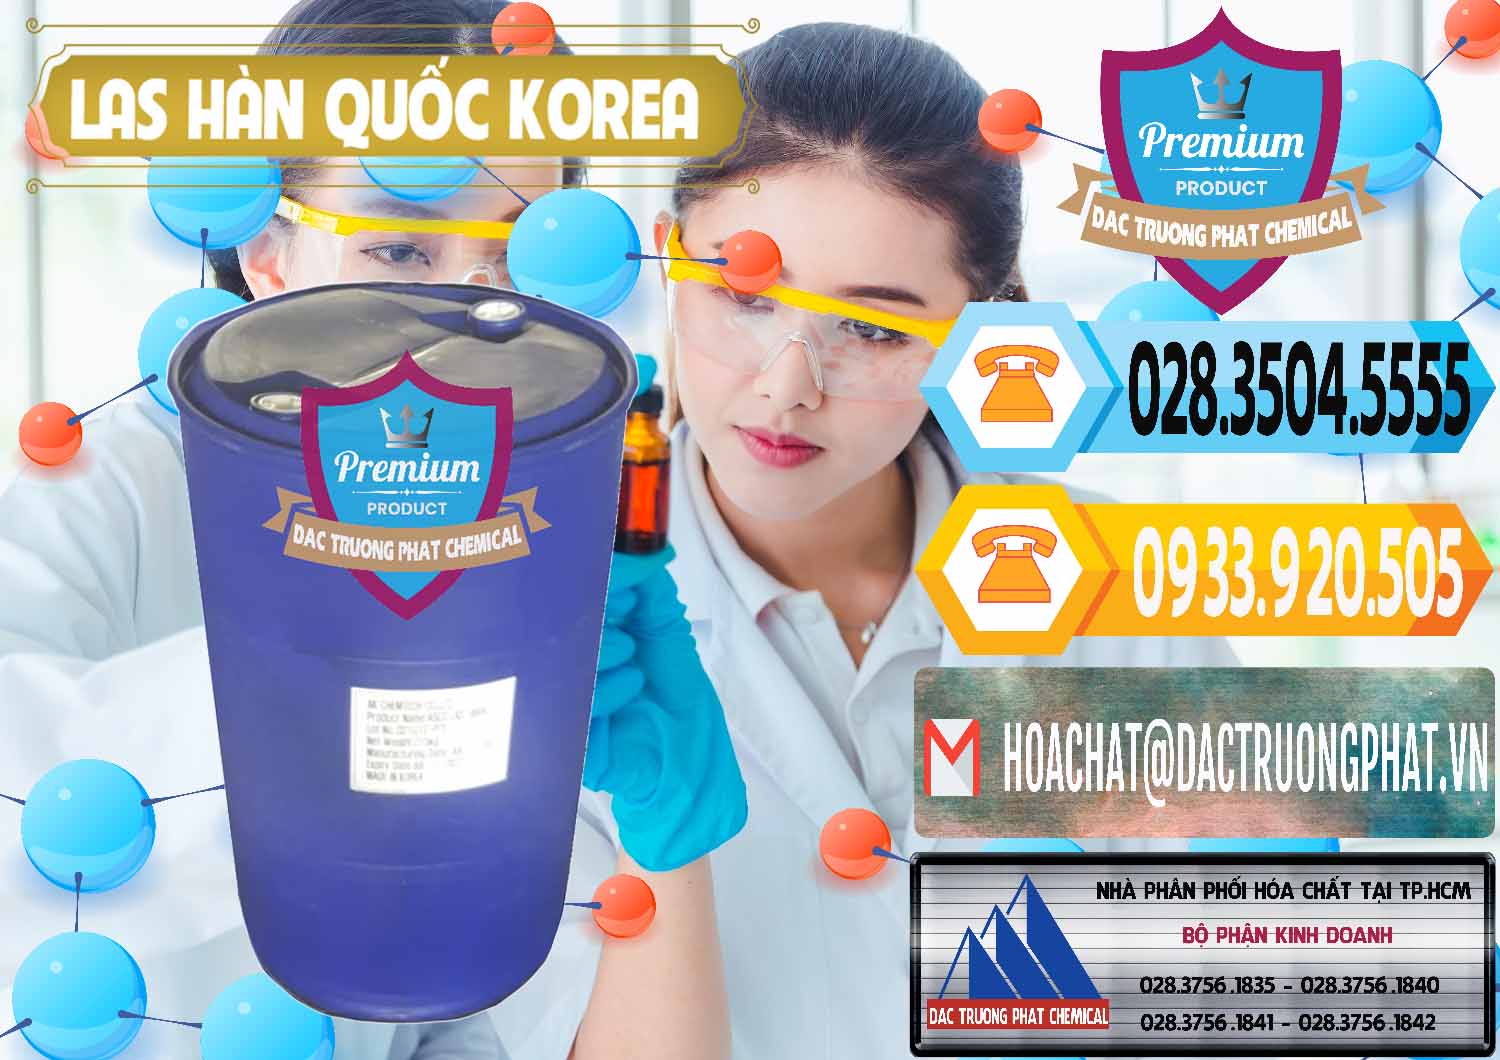 Đơn vị phân phối & bán Chất tạo bọt Las AK Chemtech ASCO Hàn Quốc Korea - 0271 - Nơi phân phối và cung cấp hóa chất tại TP.HCM - hoachattayrua.net